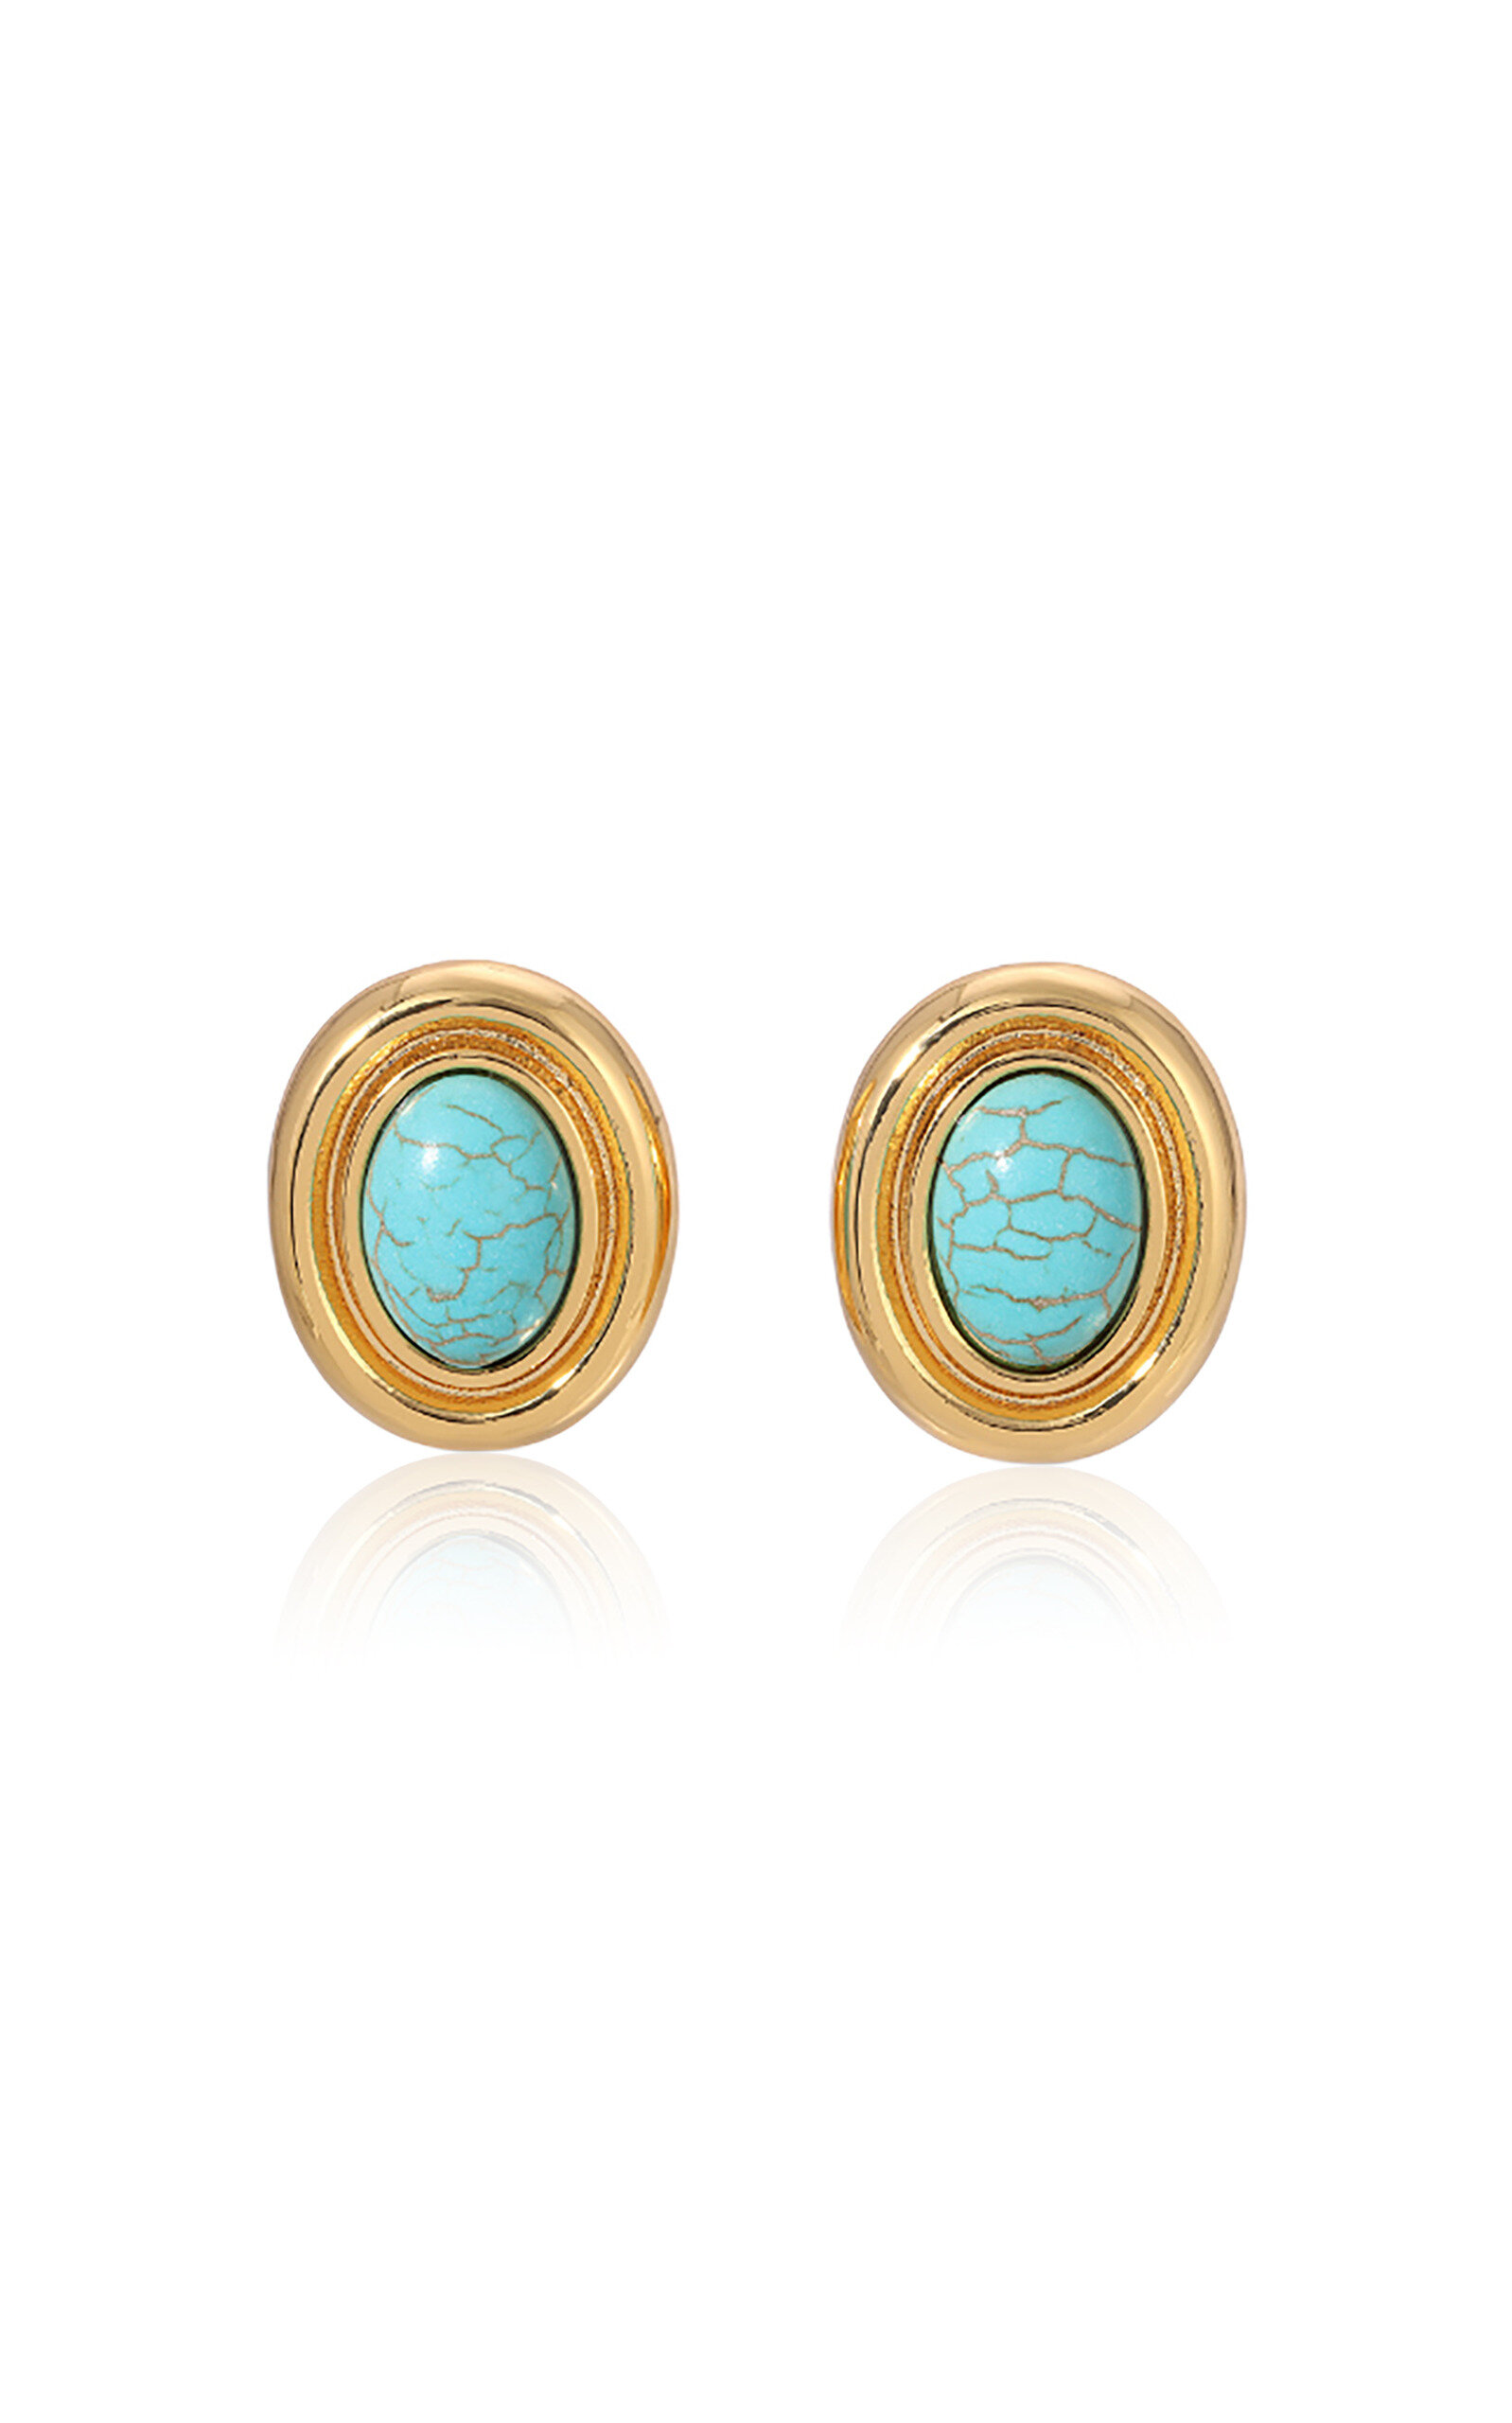 Prize Gold-Plated Enamel Earrings